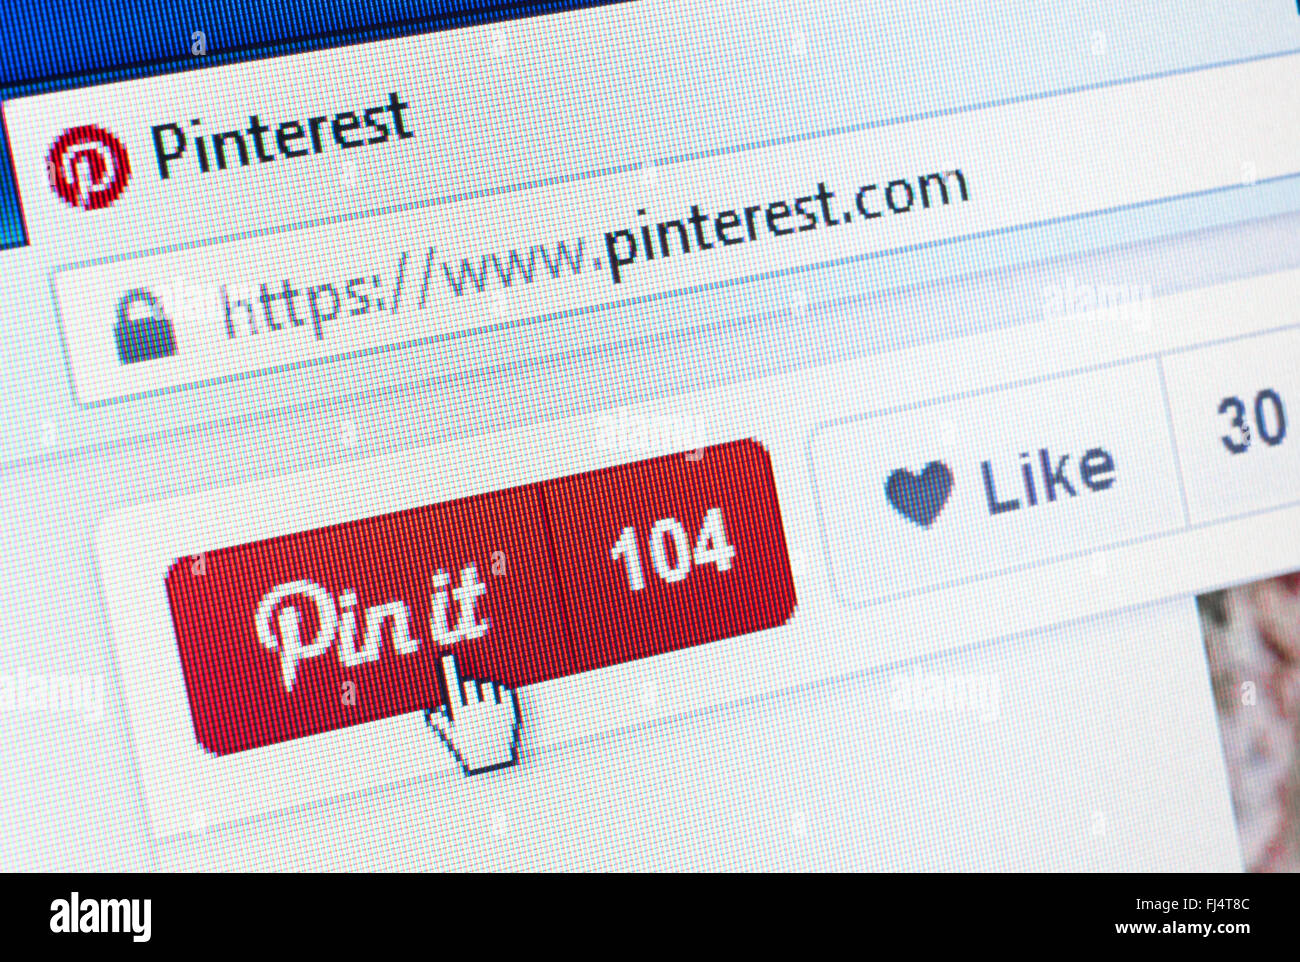 - Pologne - 7 avril 2015. Pinterest site sur écran d'ordinateur Banque D'Images